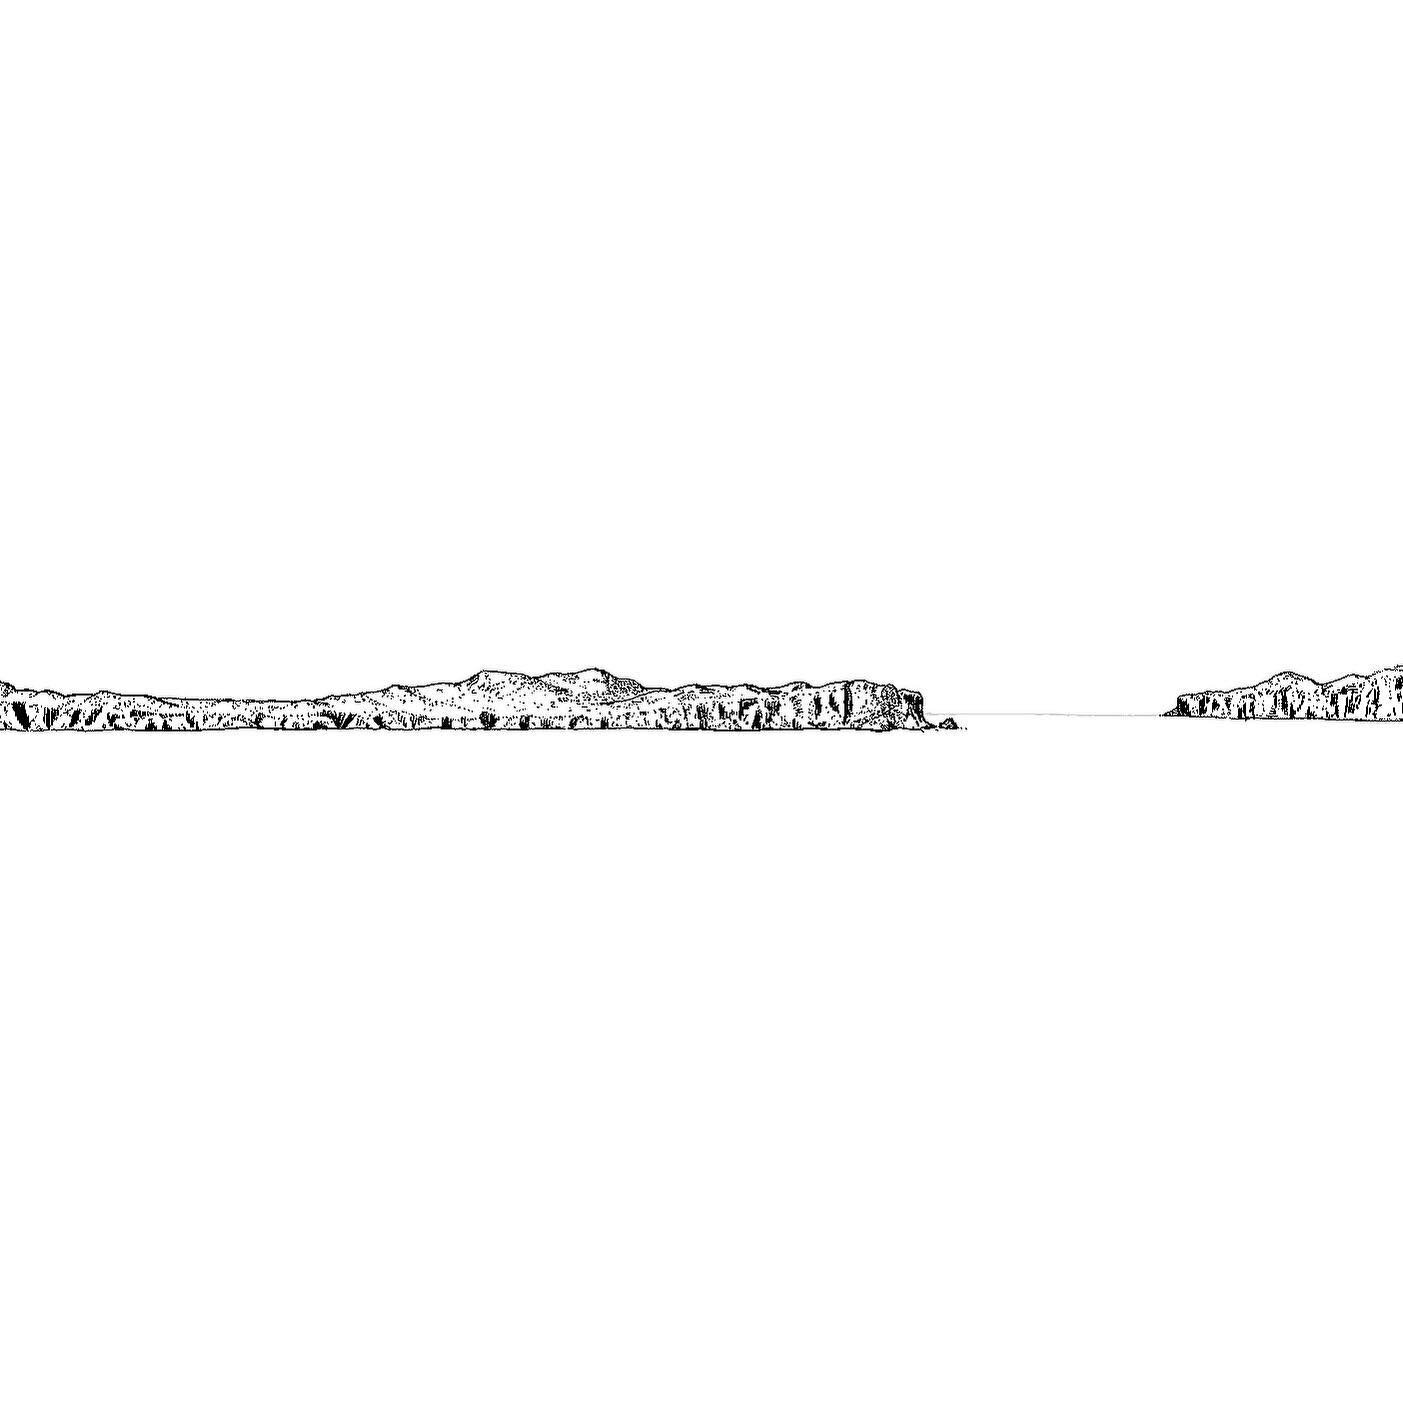 Skisse av nokre fjellklipper langs kysten. Basert p&aring; ei 200 &aring;r gamal m&aring;leriskisse av den britiske l&oslash;yntnanten Michael Houghton. 

Skissa, som vart teikna fr&aring; b&aring;t, viser nokre klipper ved inngangen til #Persiabukta